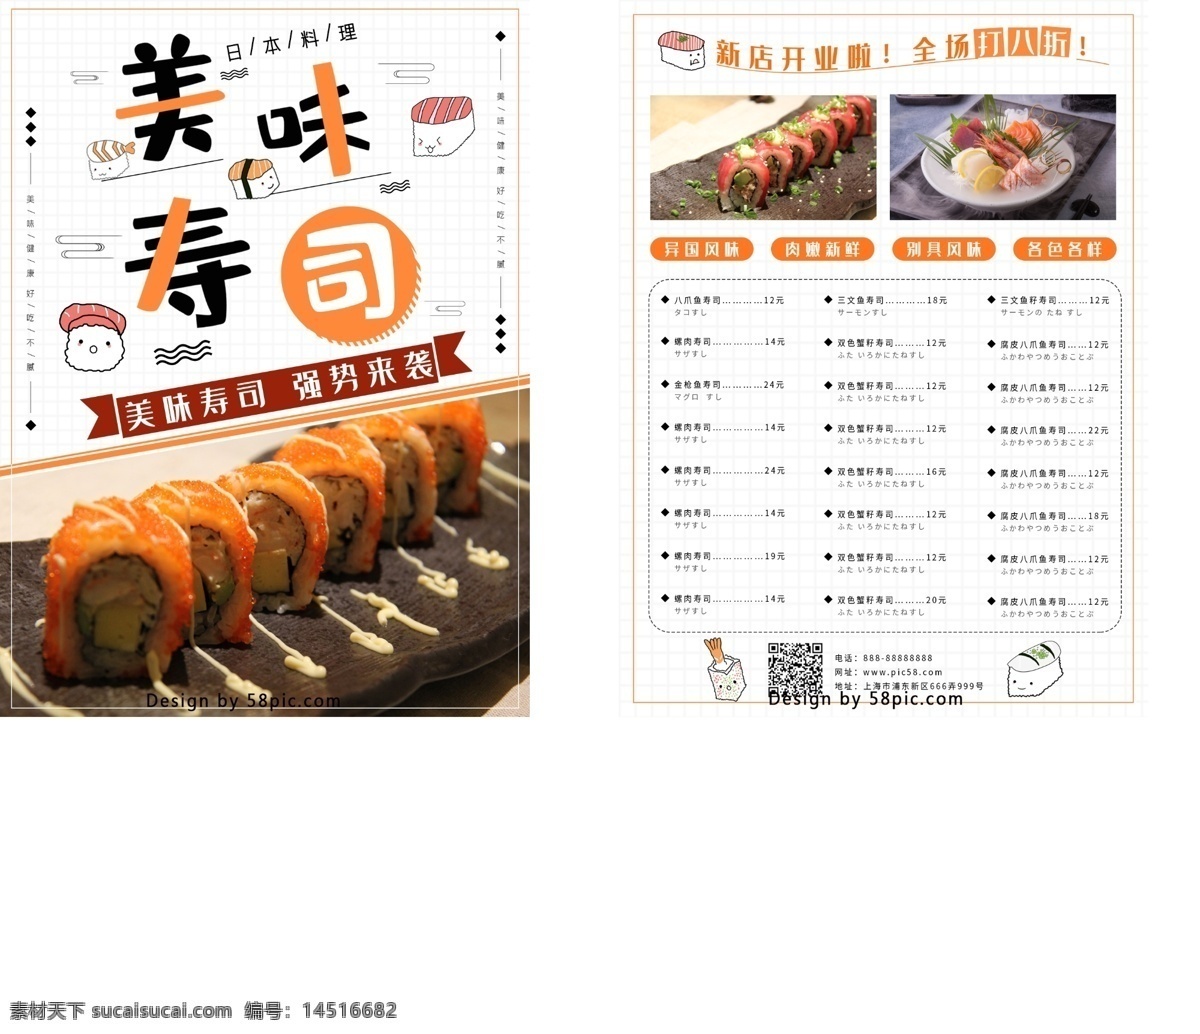 日本 寿司 菜单 宣传单 日本寿司 简约 单页 新店开业 美味寿司 优惠 美味 日本料理 日式 日式料理 单页宣传单